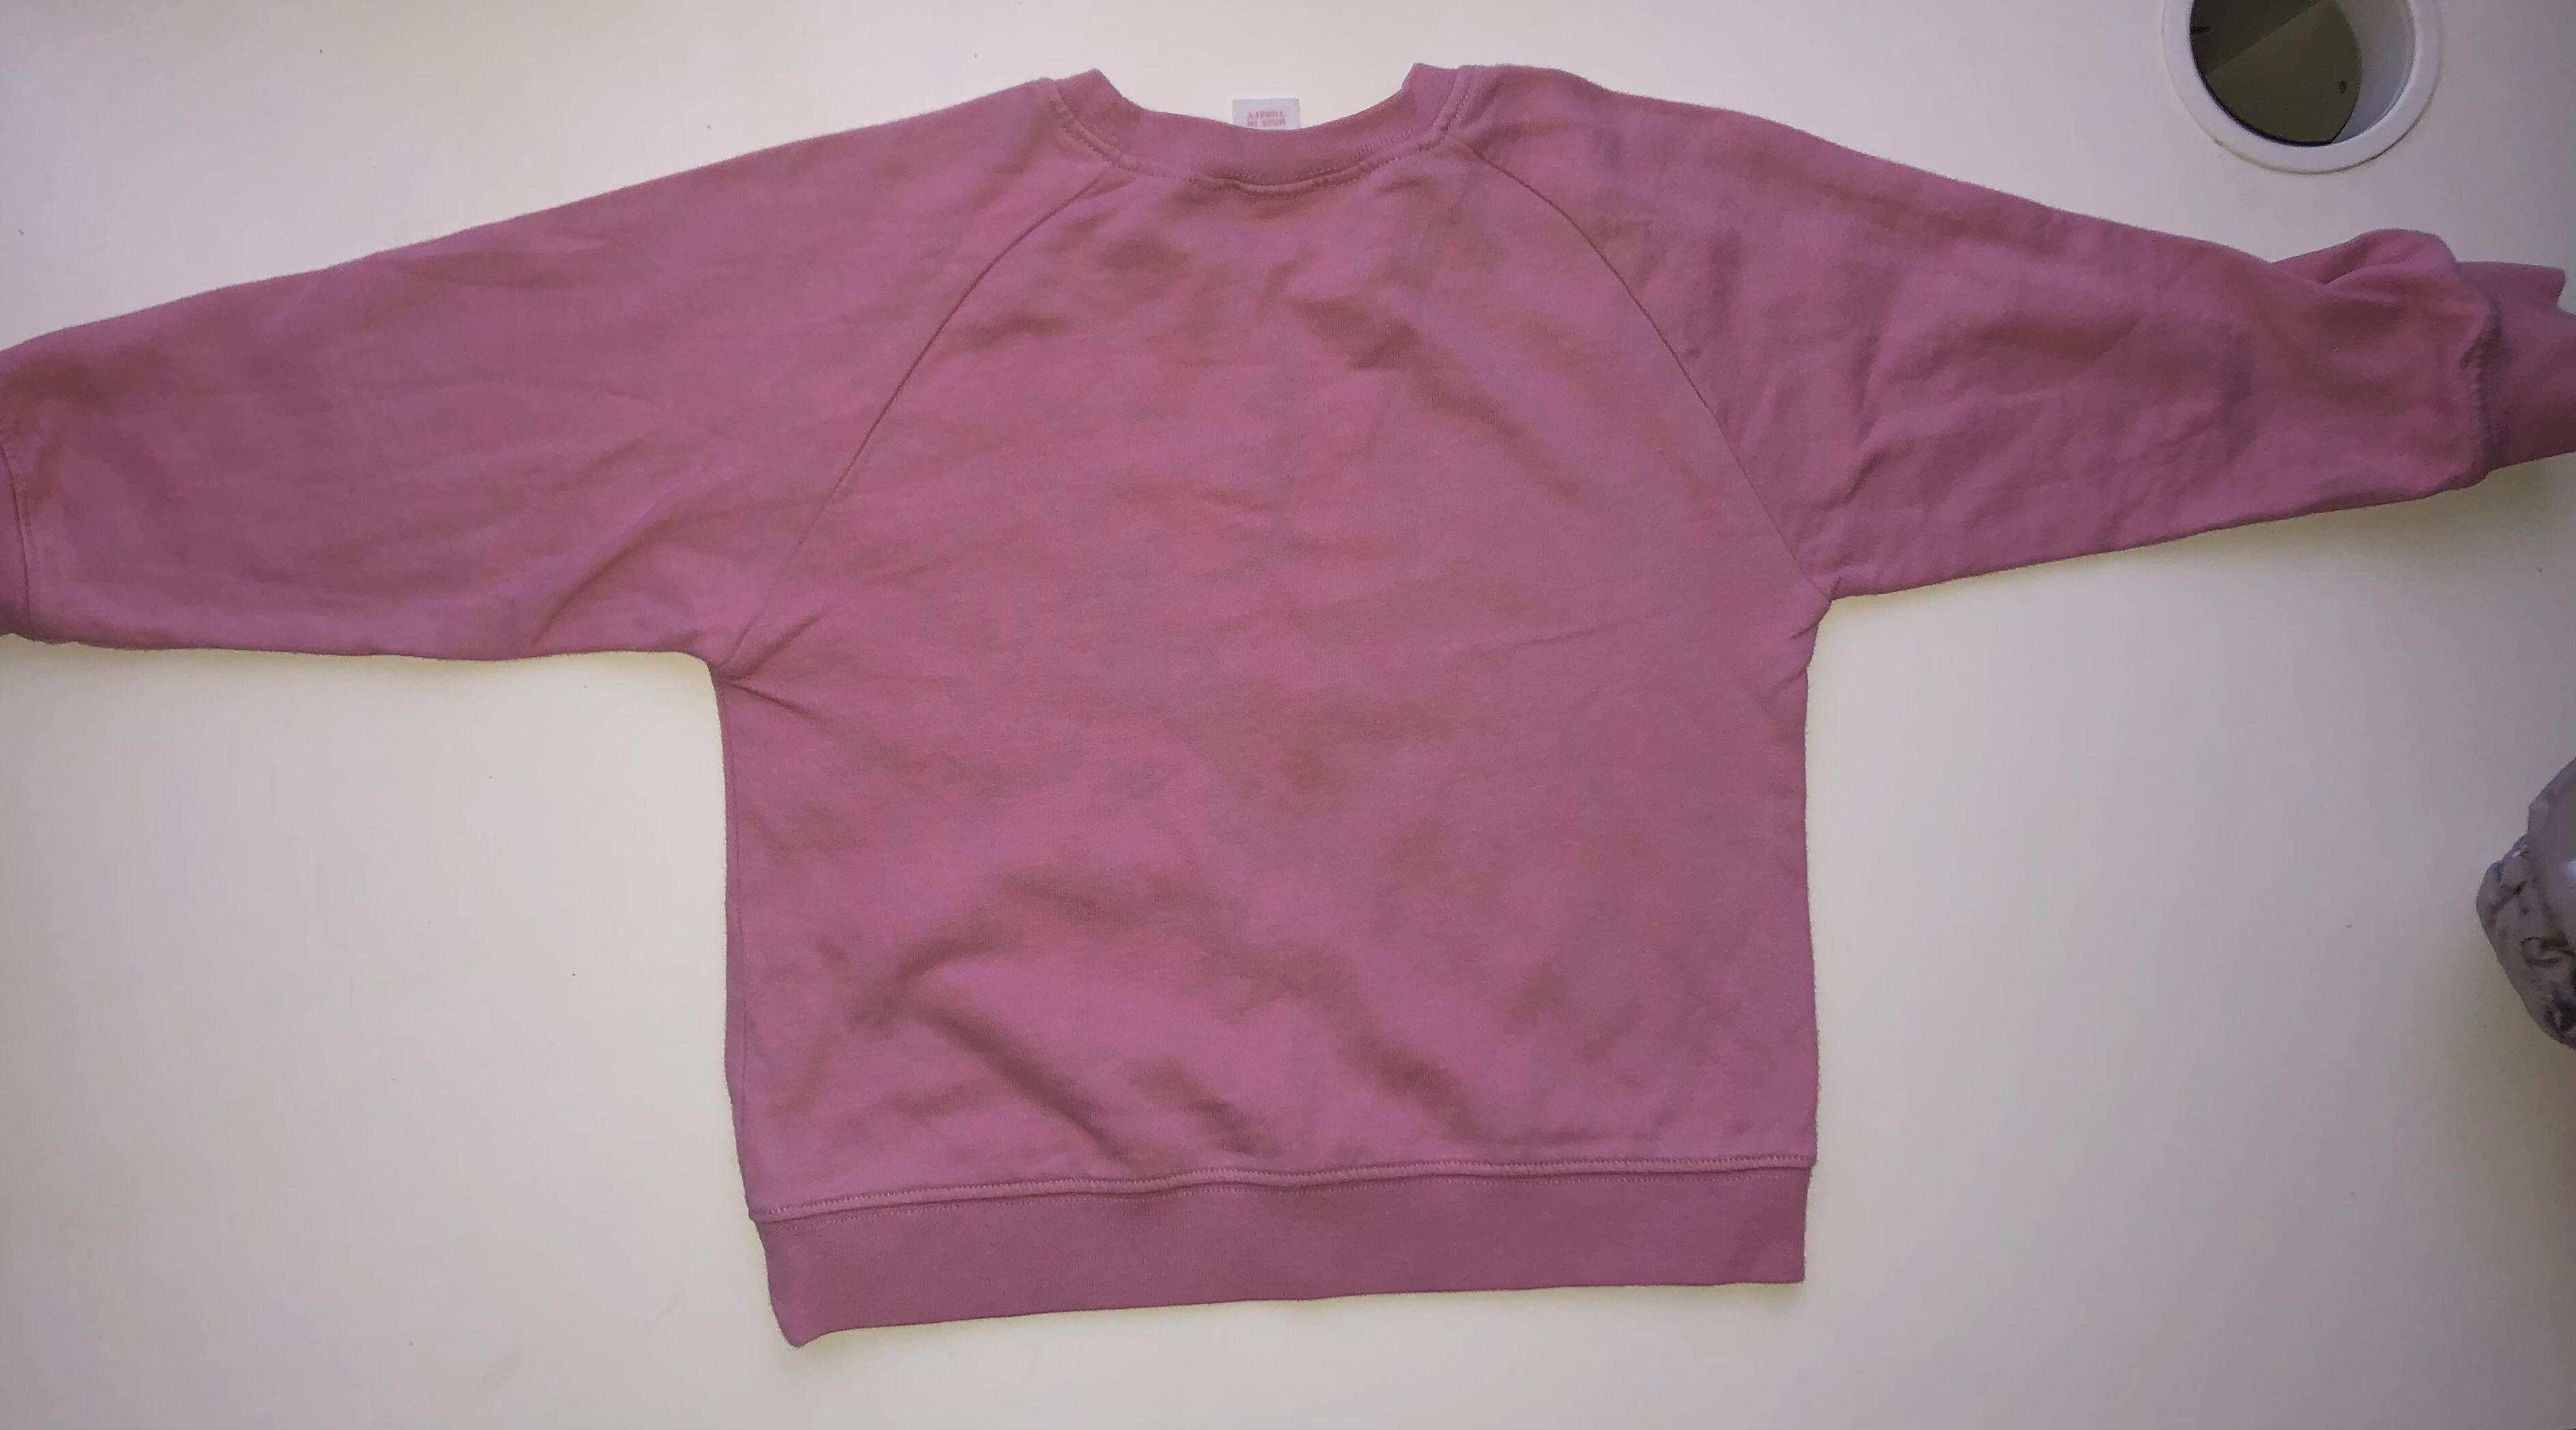 H&M różowa bluza z konikiem. Rozmiar 86/92.